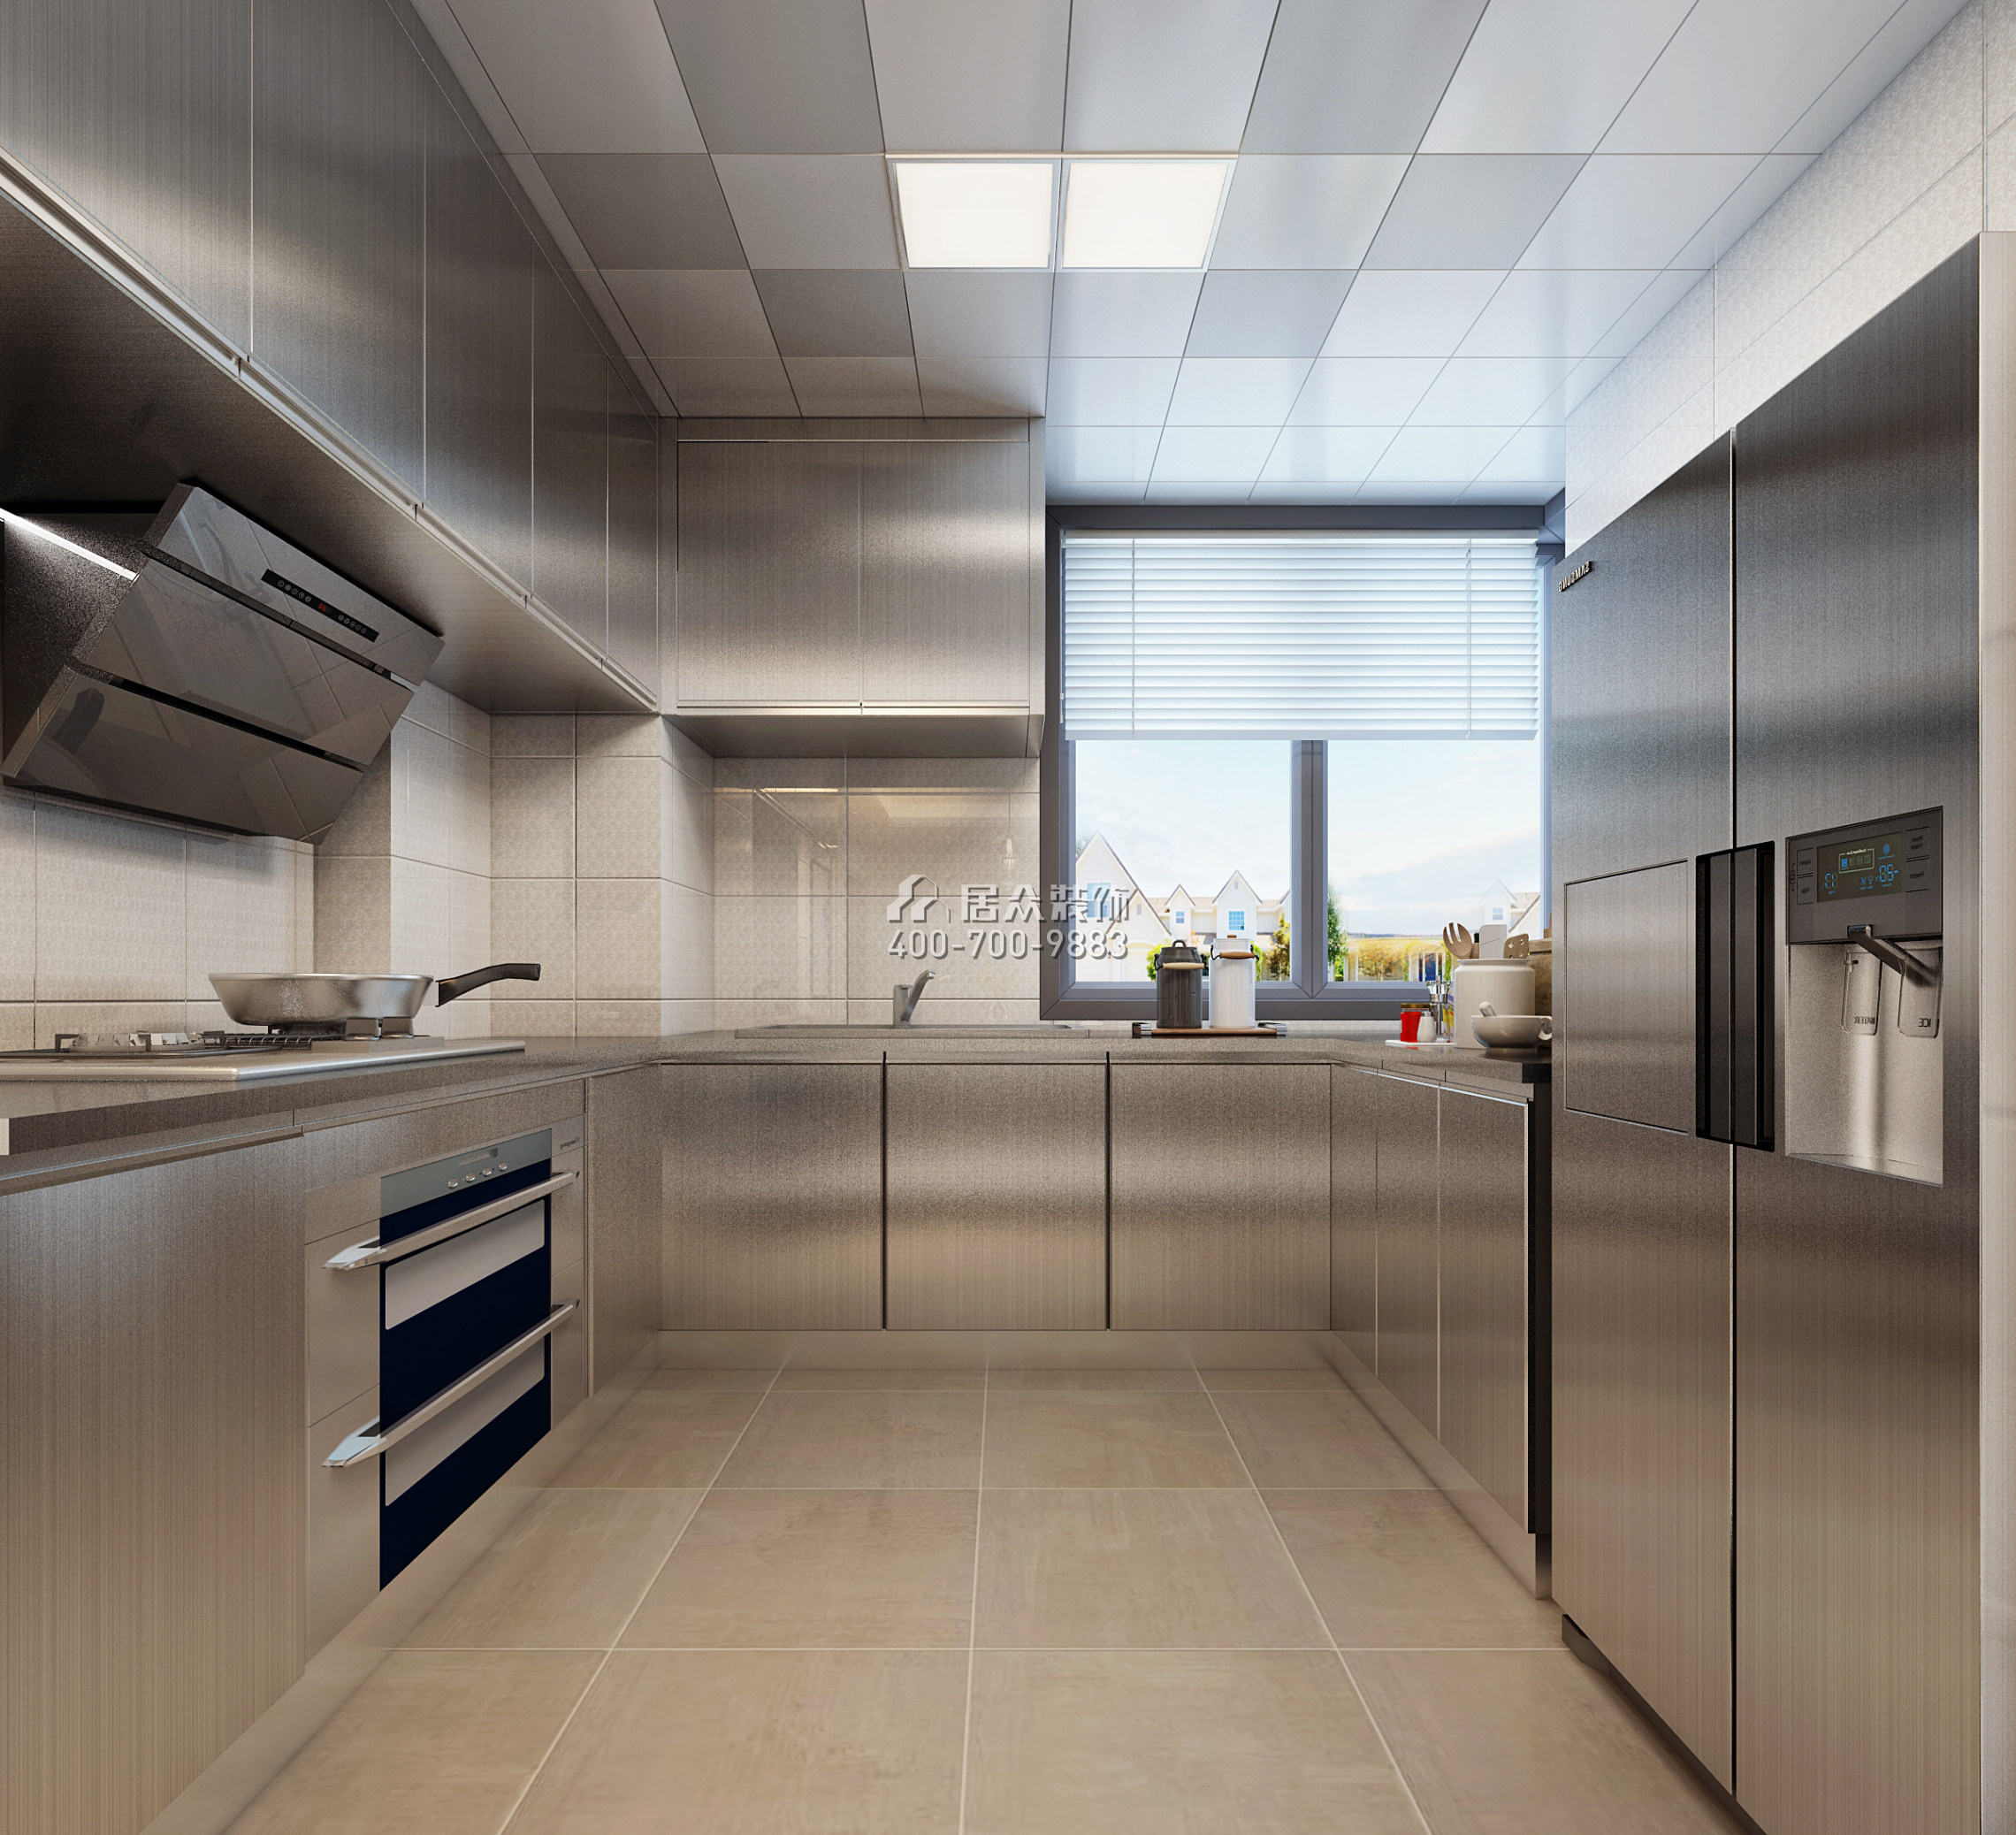 中骏蓝湾悦庭110平方米现代简约风格平层户型厨房装修效果图